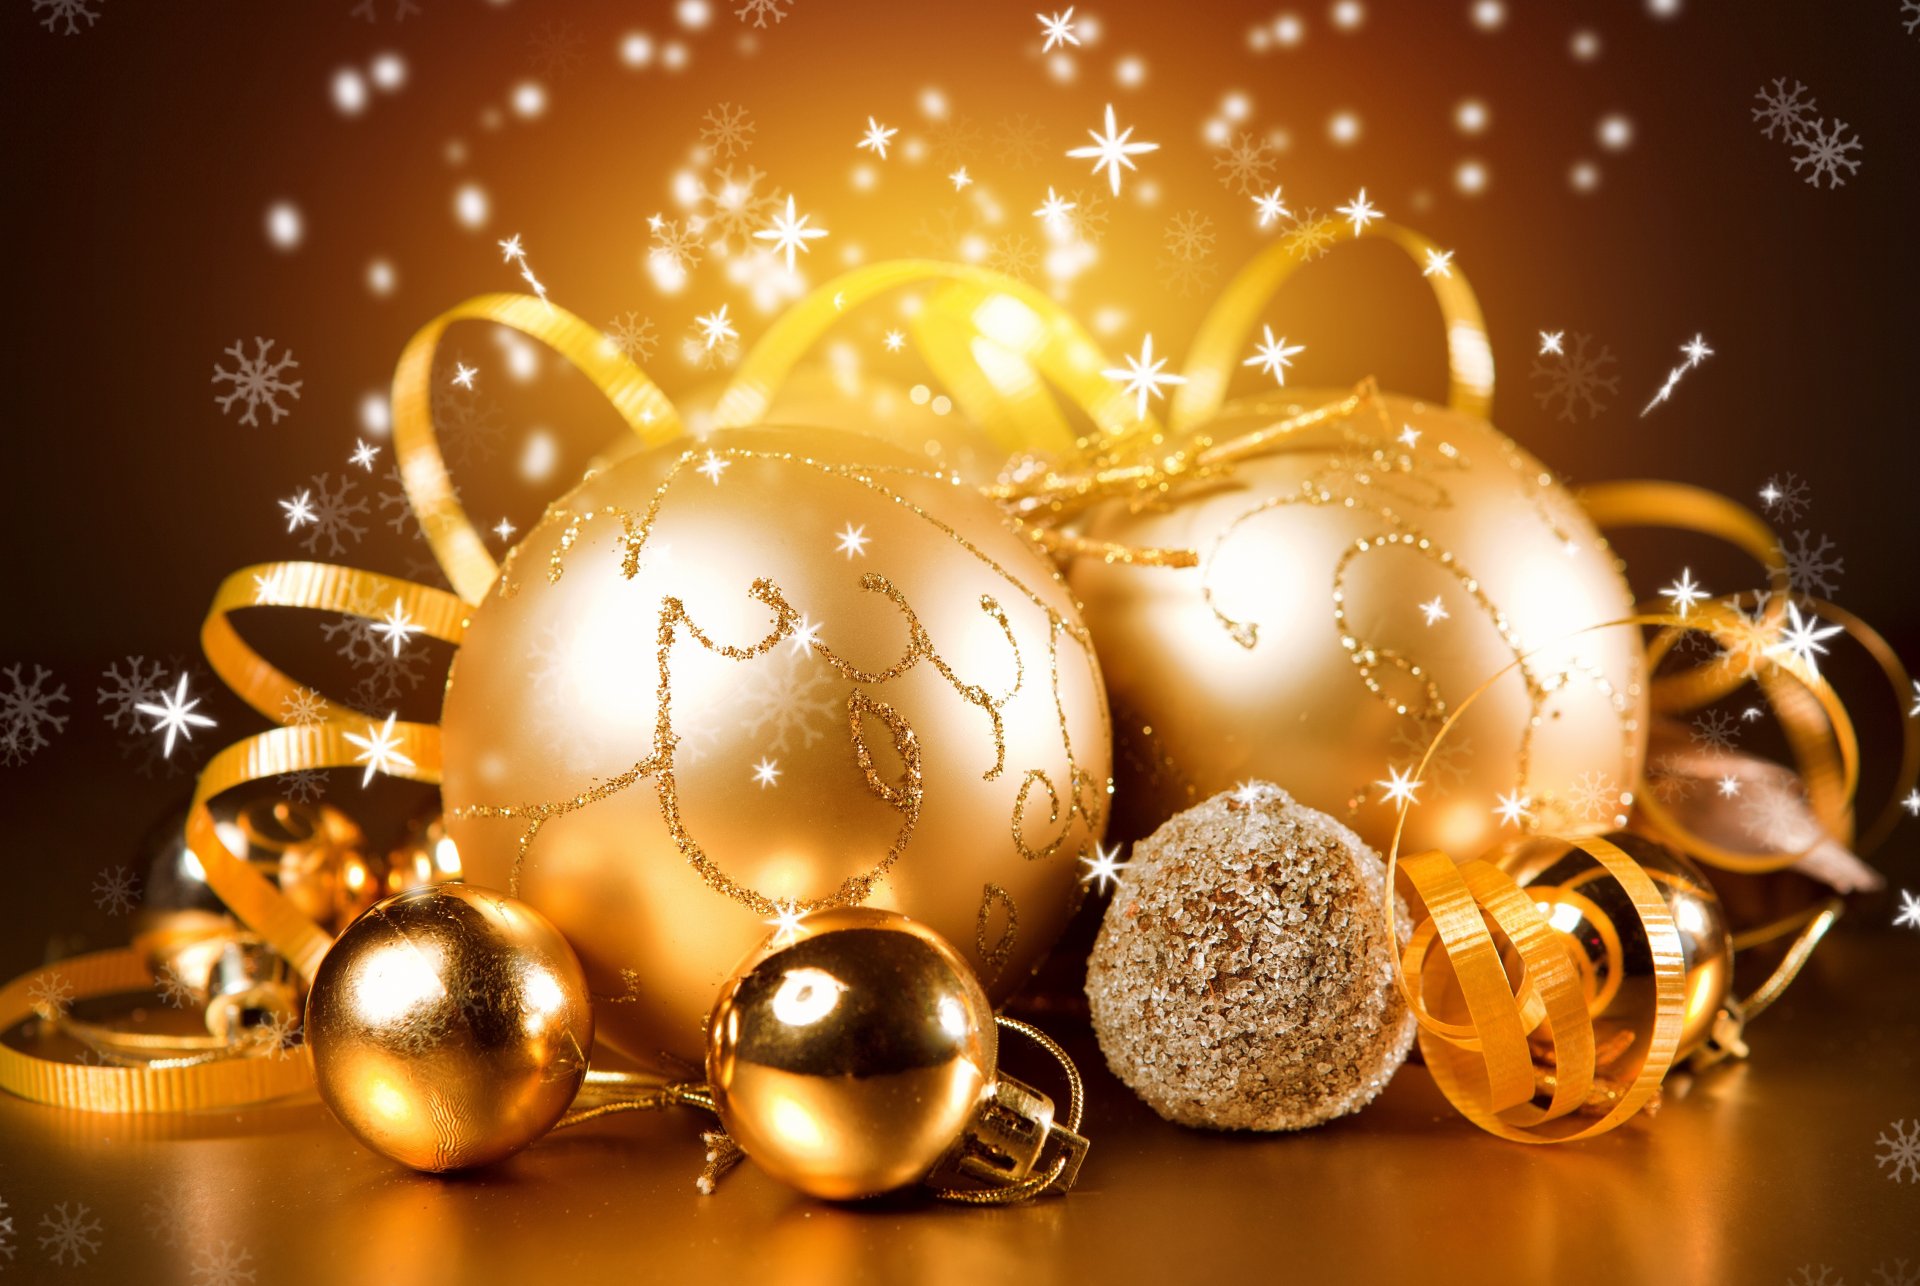 año nuevo navidad invierno bolas bolas oro juguetes adornos árbol de navidad decoraciones vacaciones